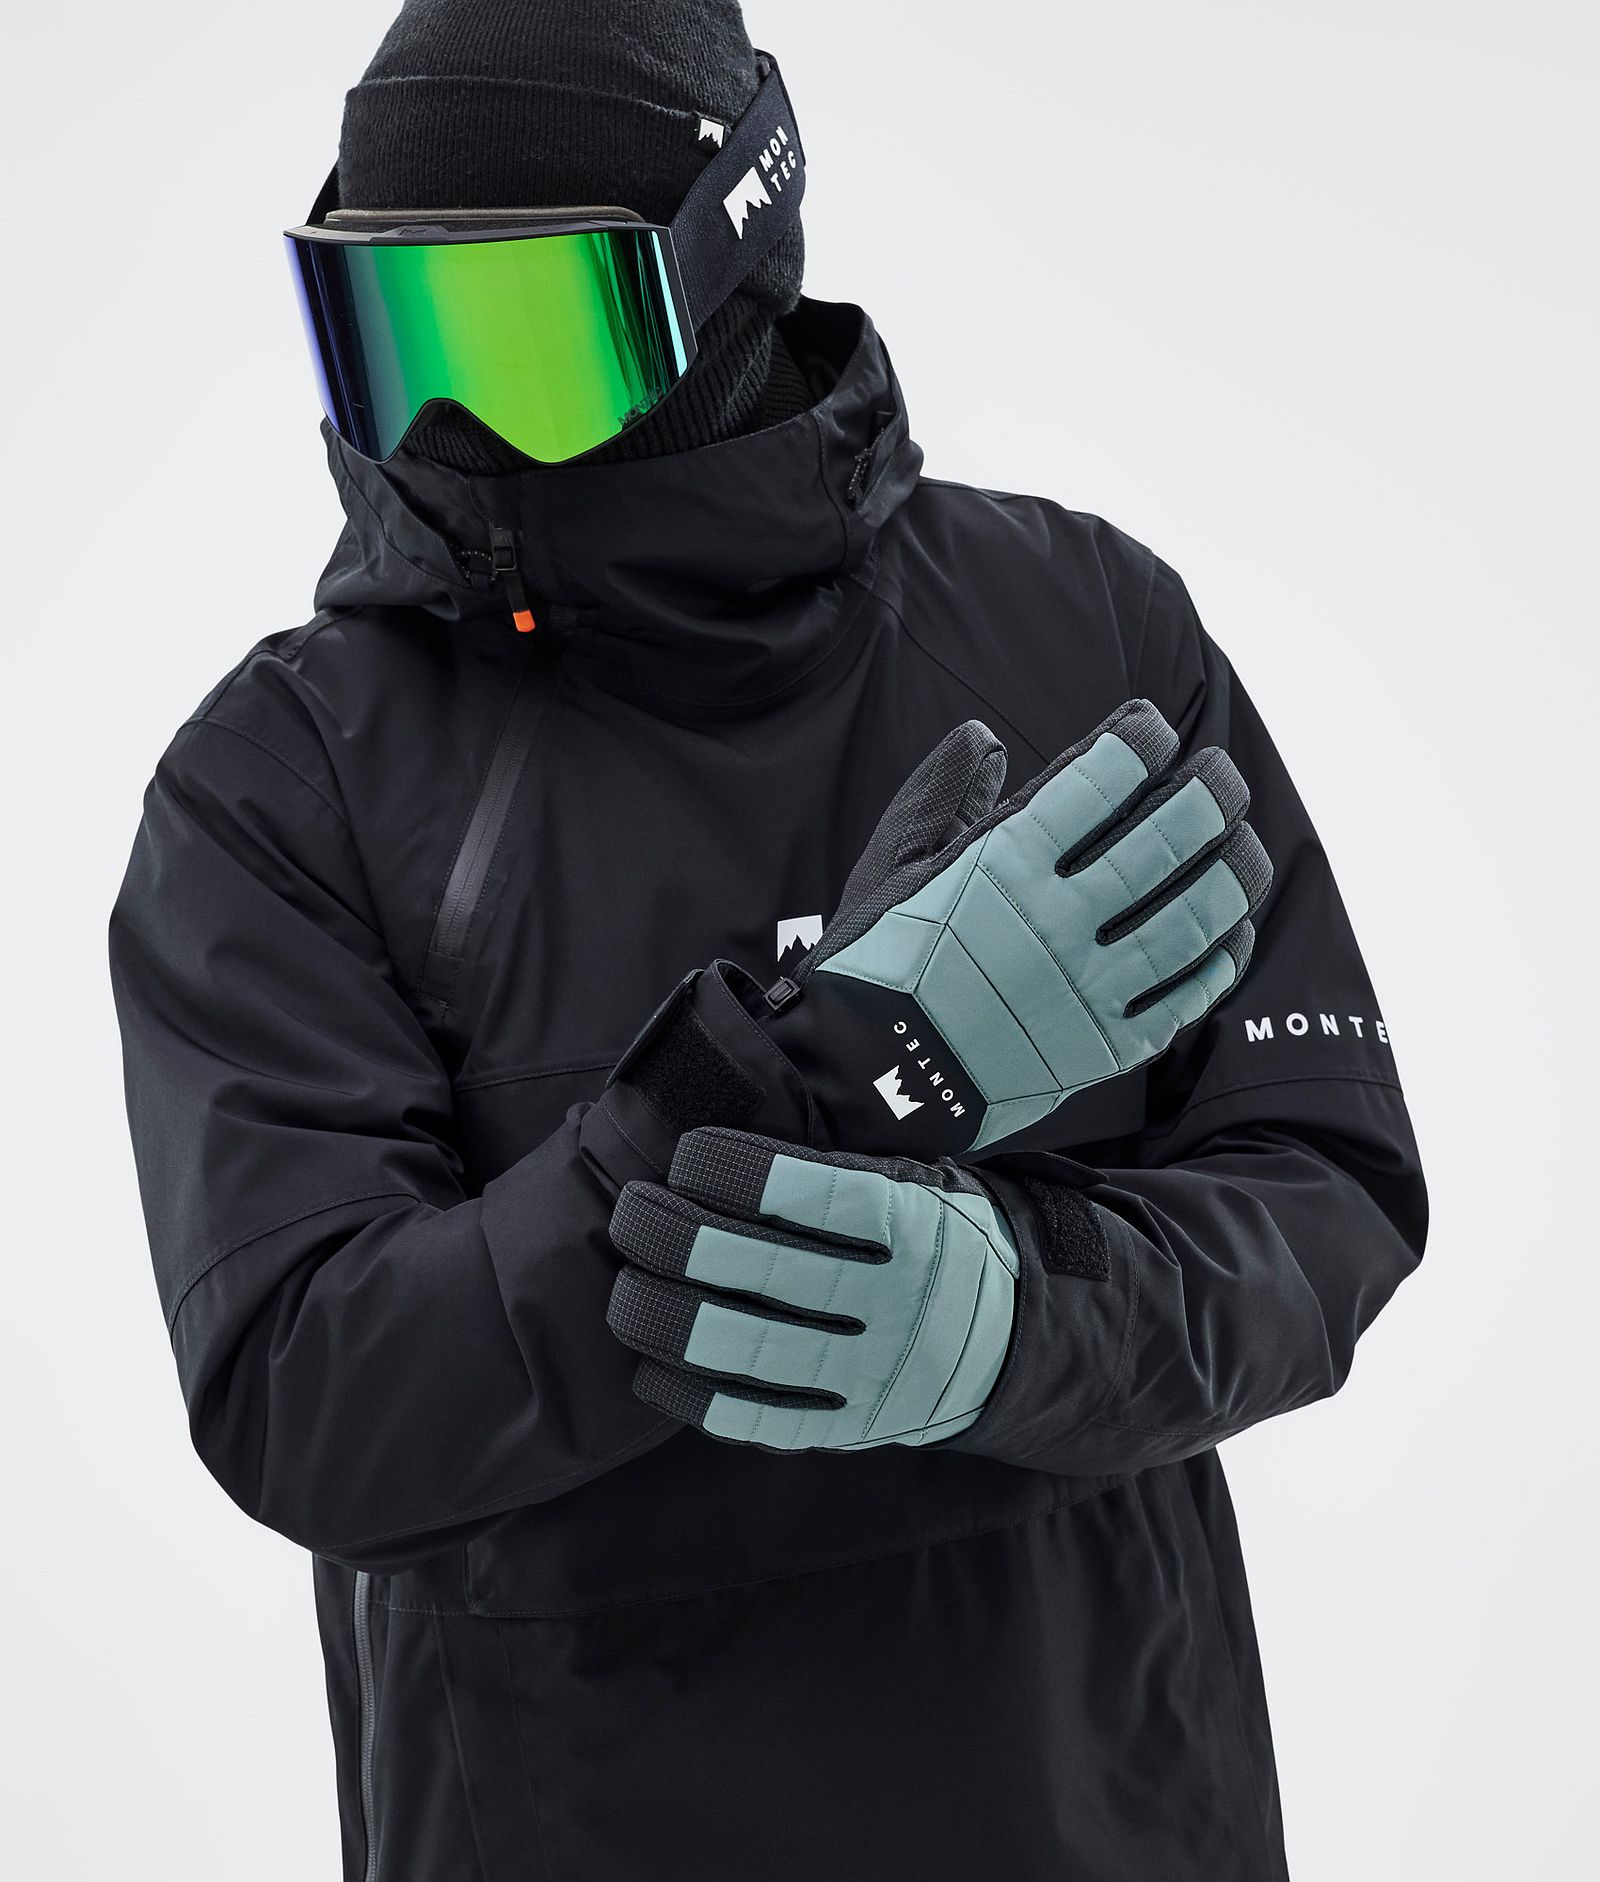 Kilo Ski Gloves Atlantic, Image 3 of 5